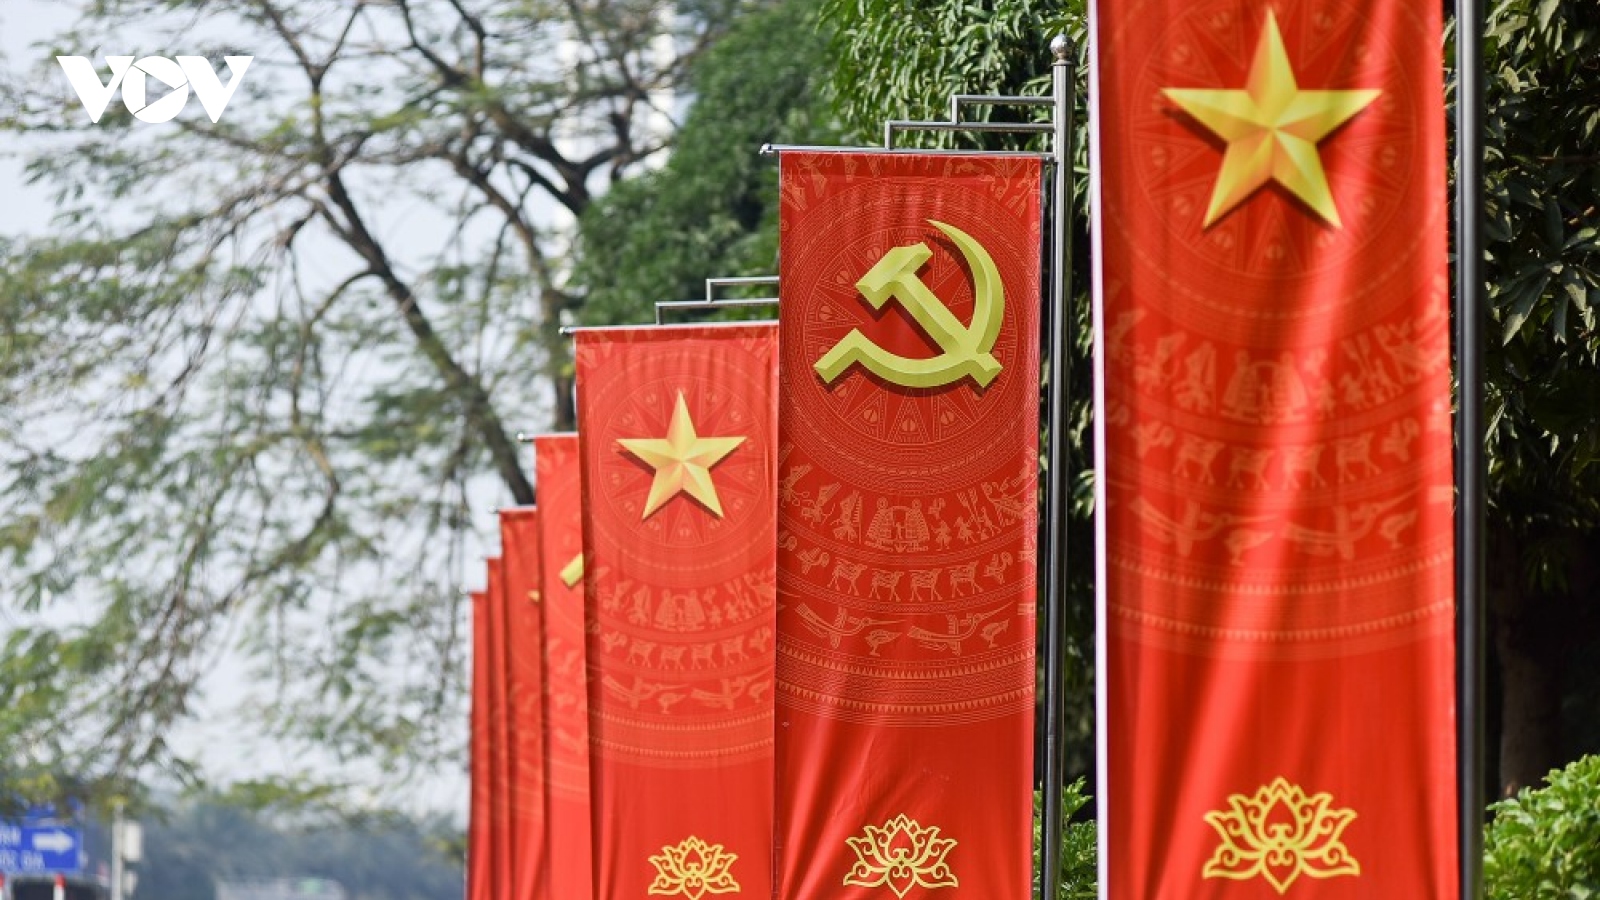 Bài viết của Tổng Bí thư - Tài liệu nổi bật về quan điểm lý luận CNXH ở Việt Nam